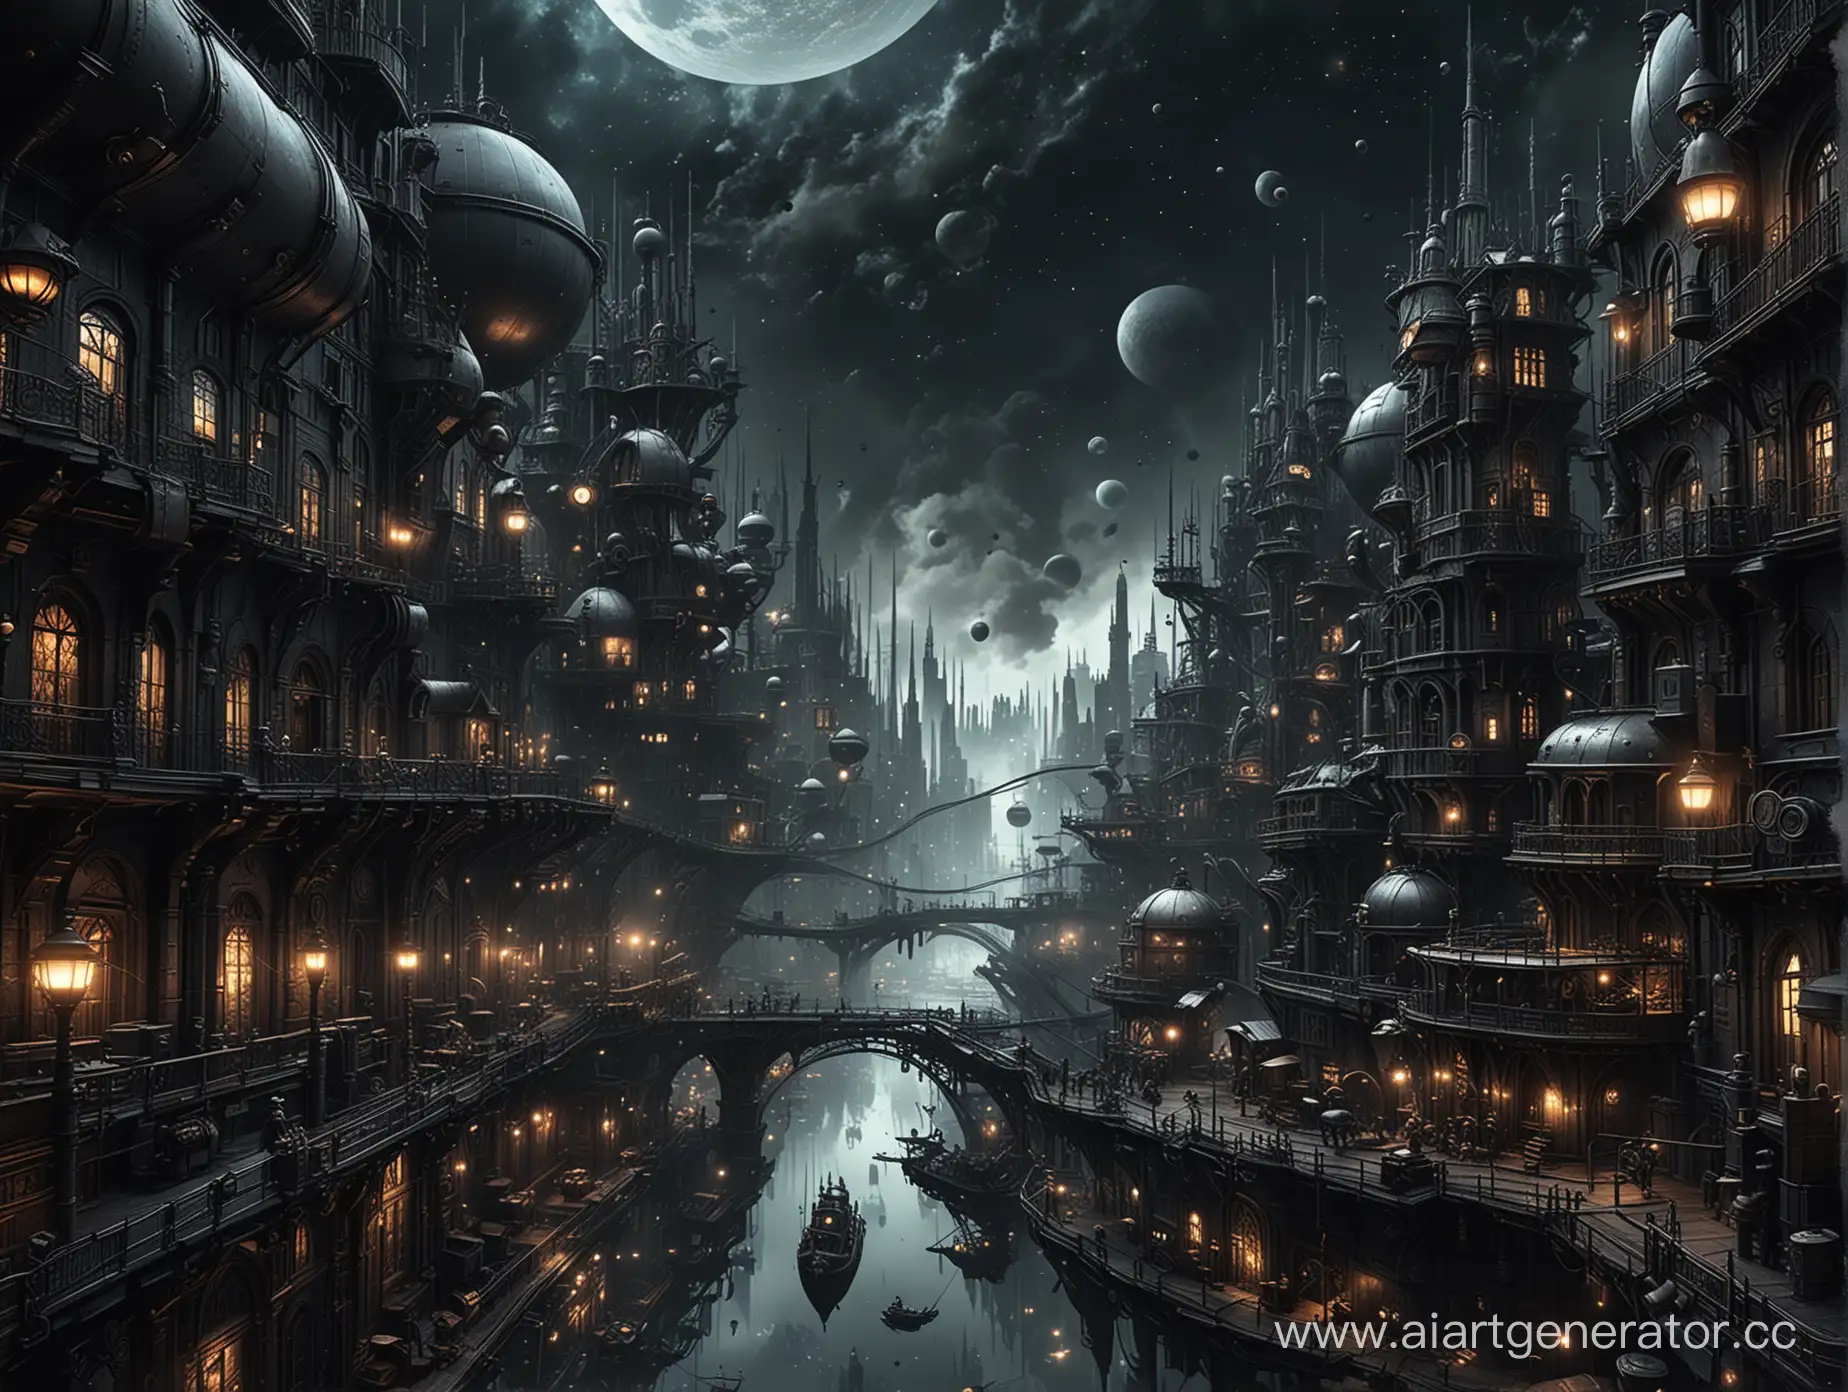 Огромный город в стиле стимпанк дрейфует в черном космосе, в темных тонах.